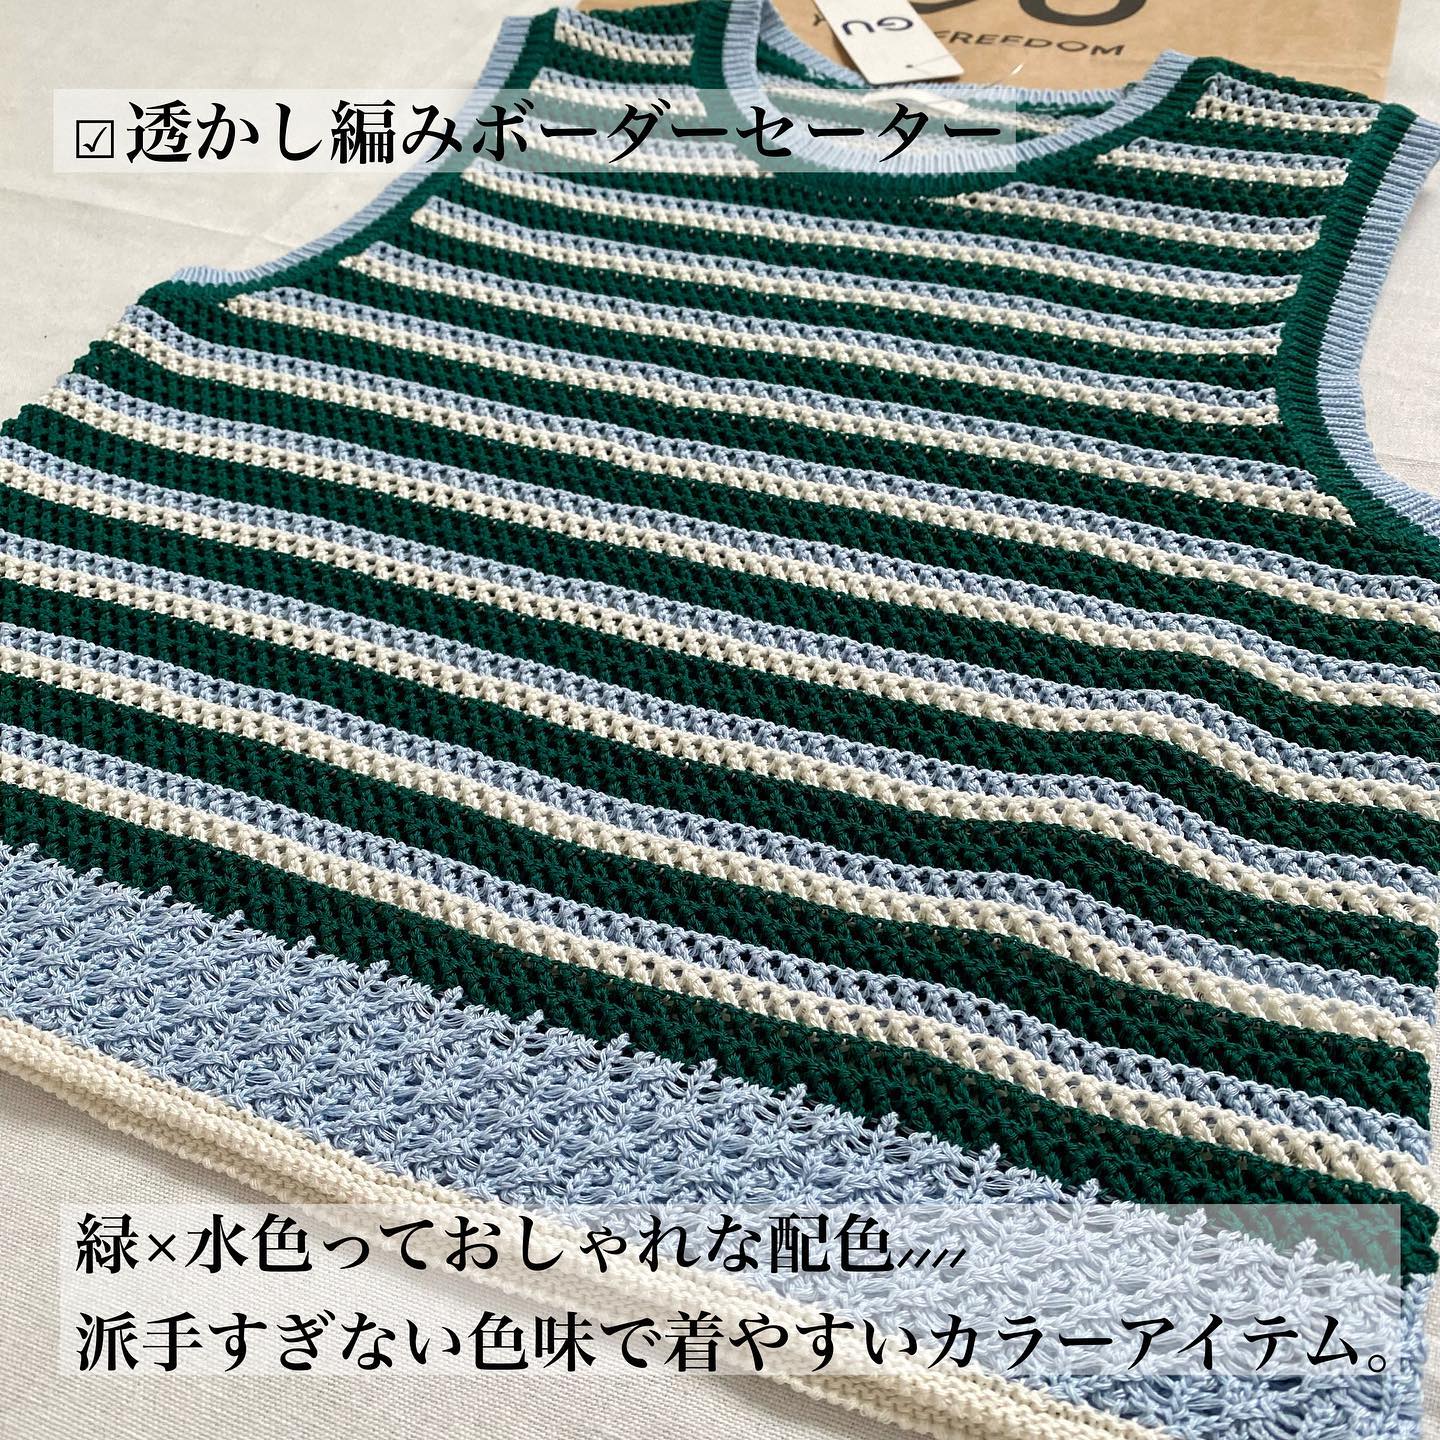 透かし編みボーダーセーター、グリーンの画像